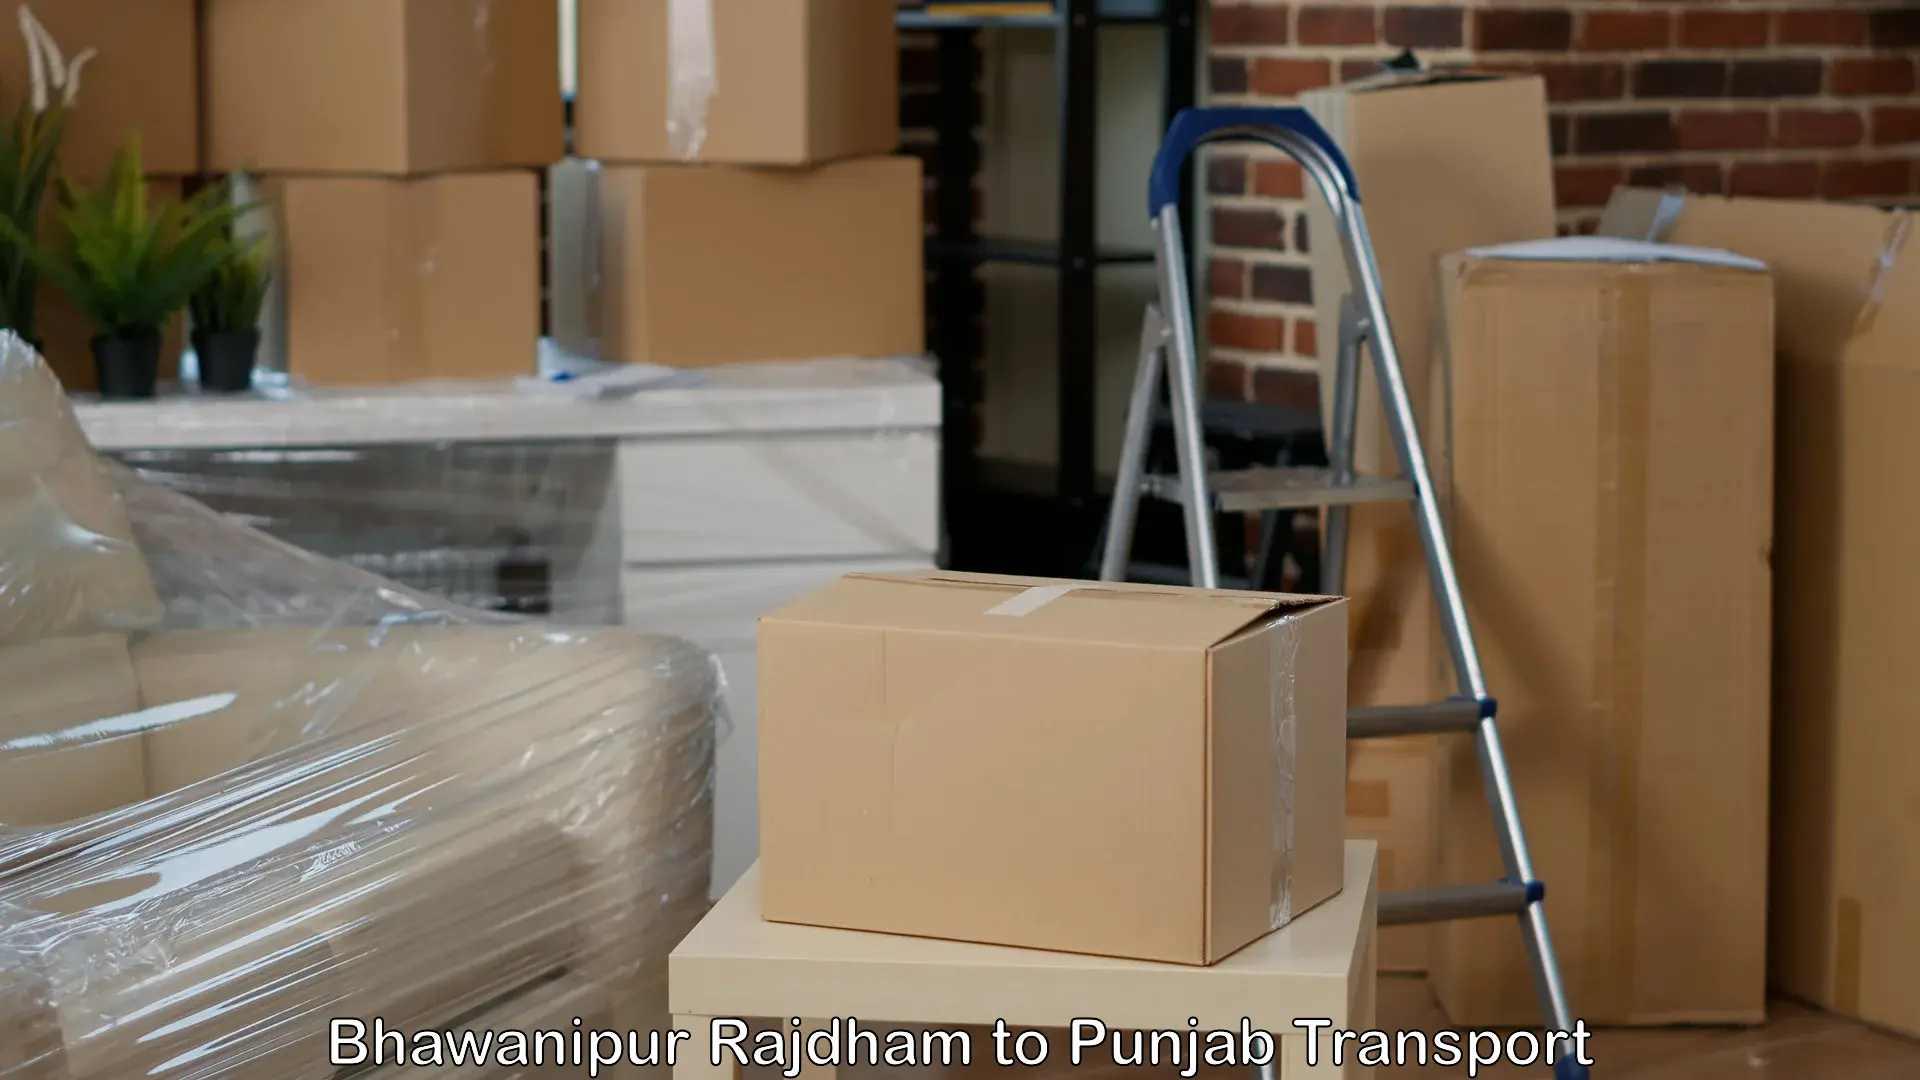 Cargo transportation services Bhawanipur Rajdham to Phagwara